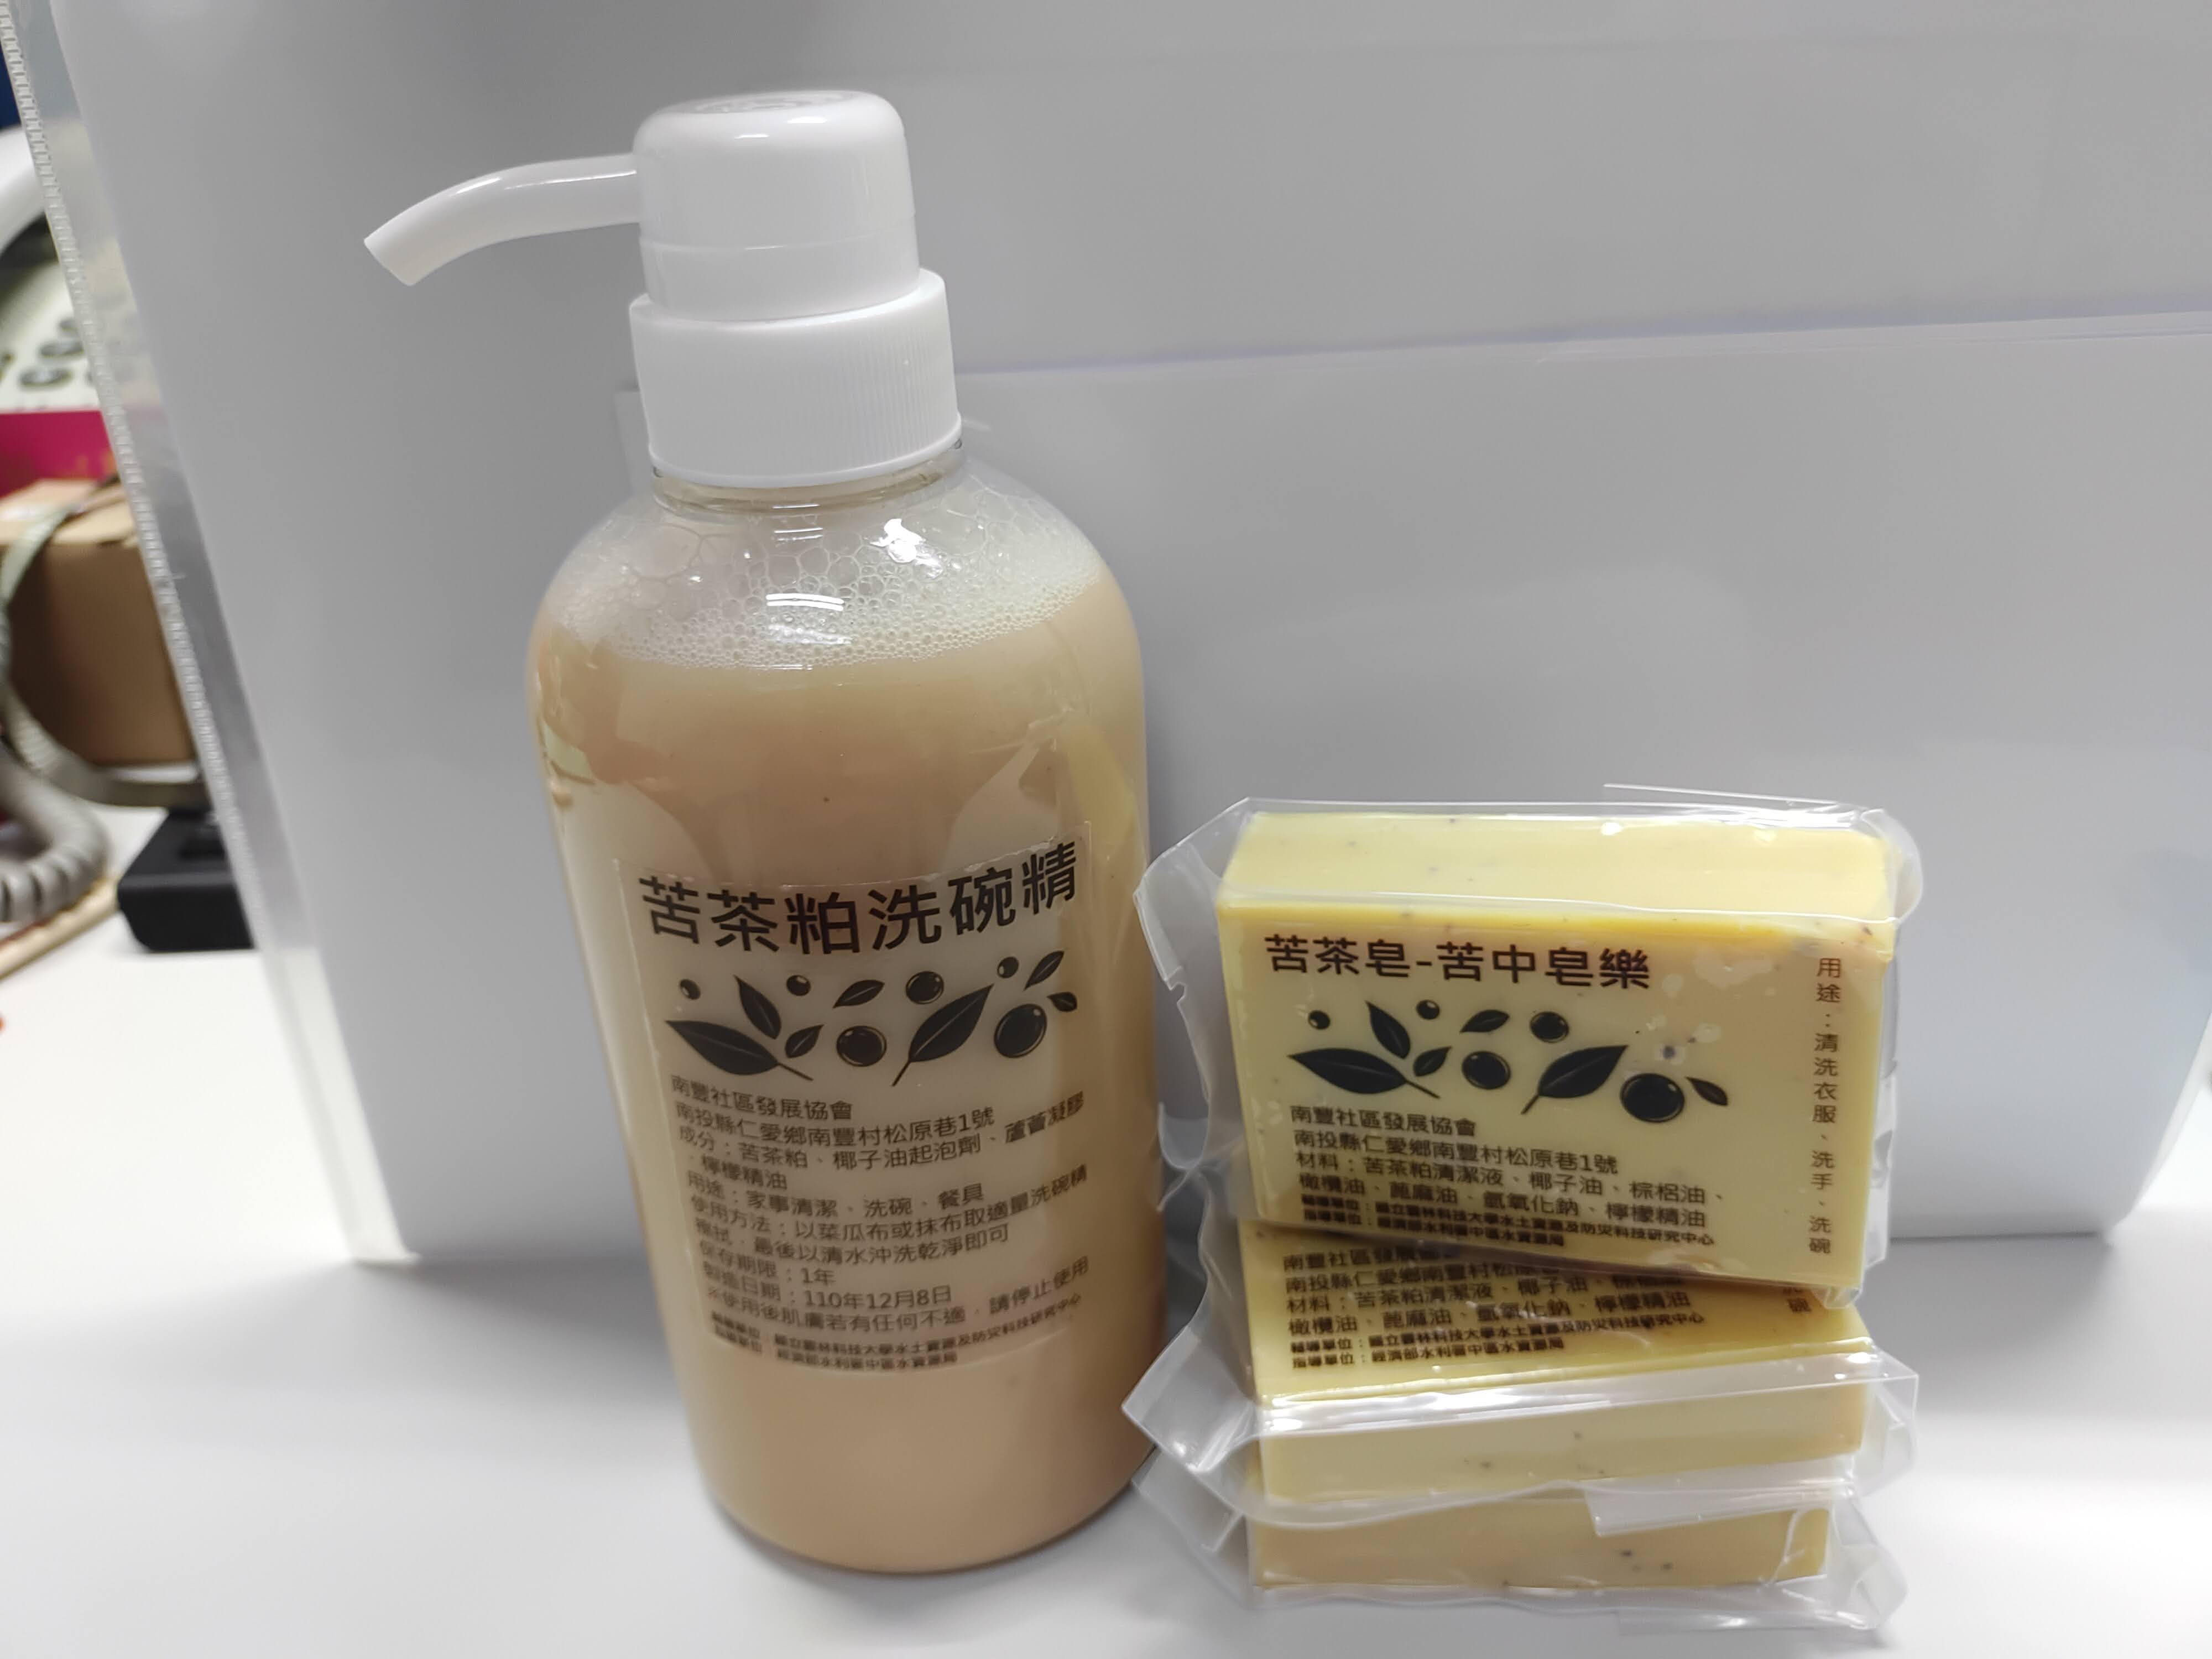 南豐社區苦茶皂清潔液及苦茶皂照片